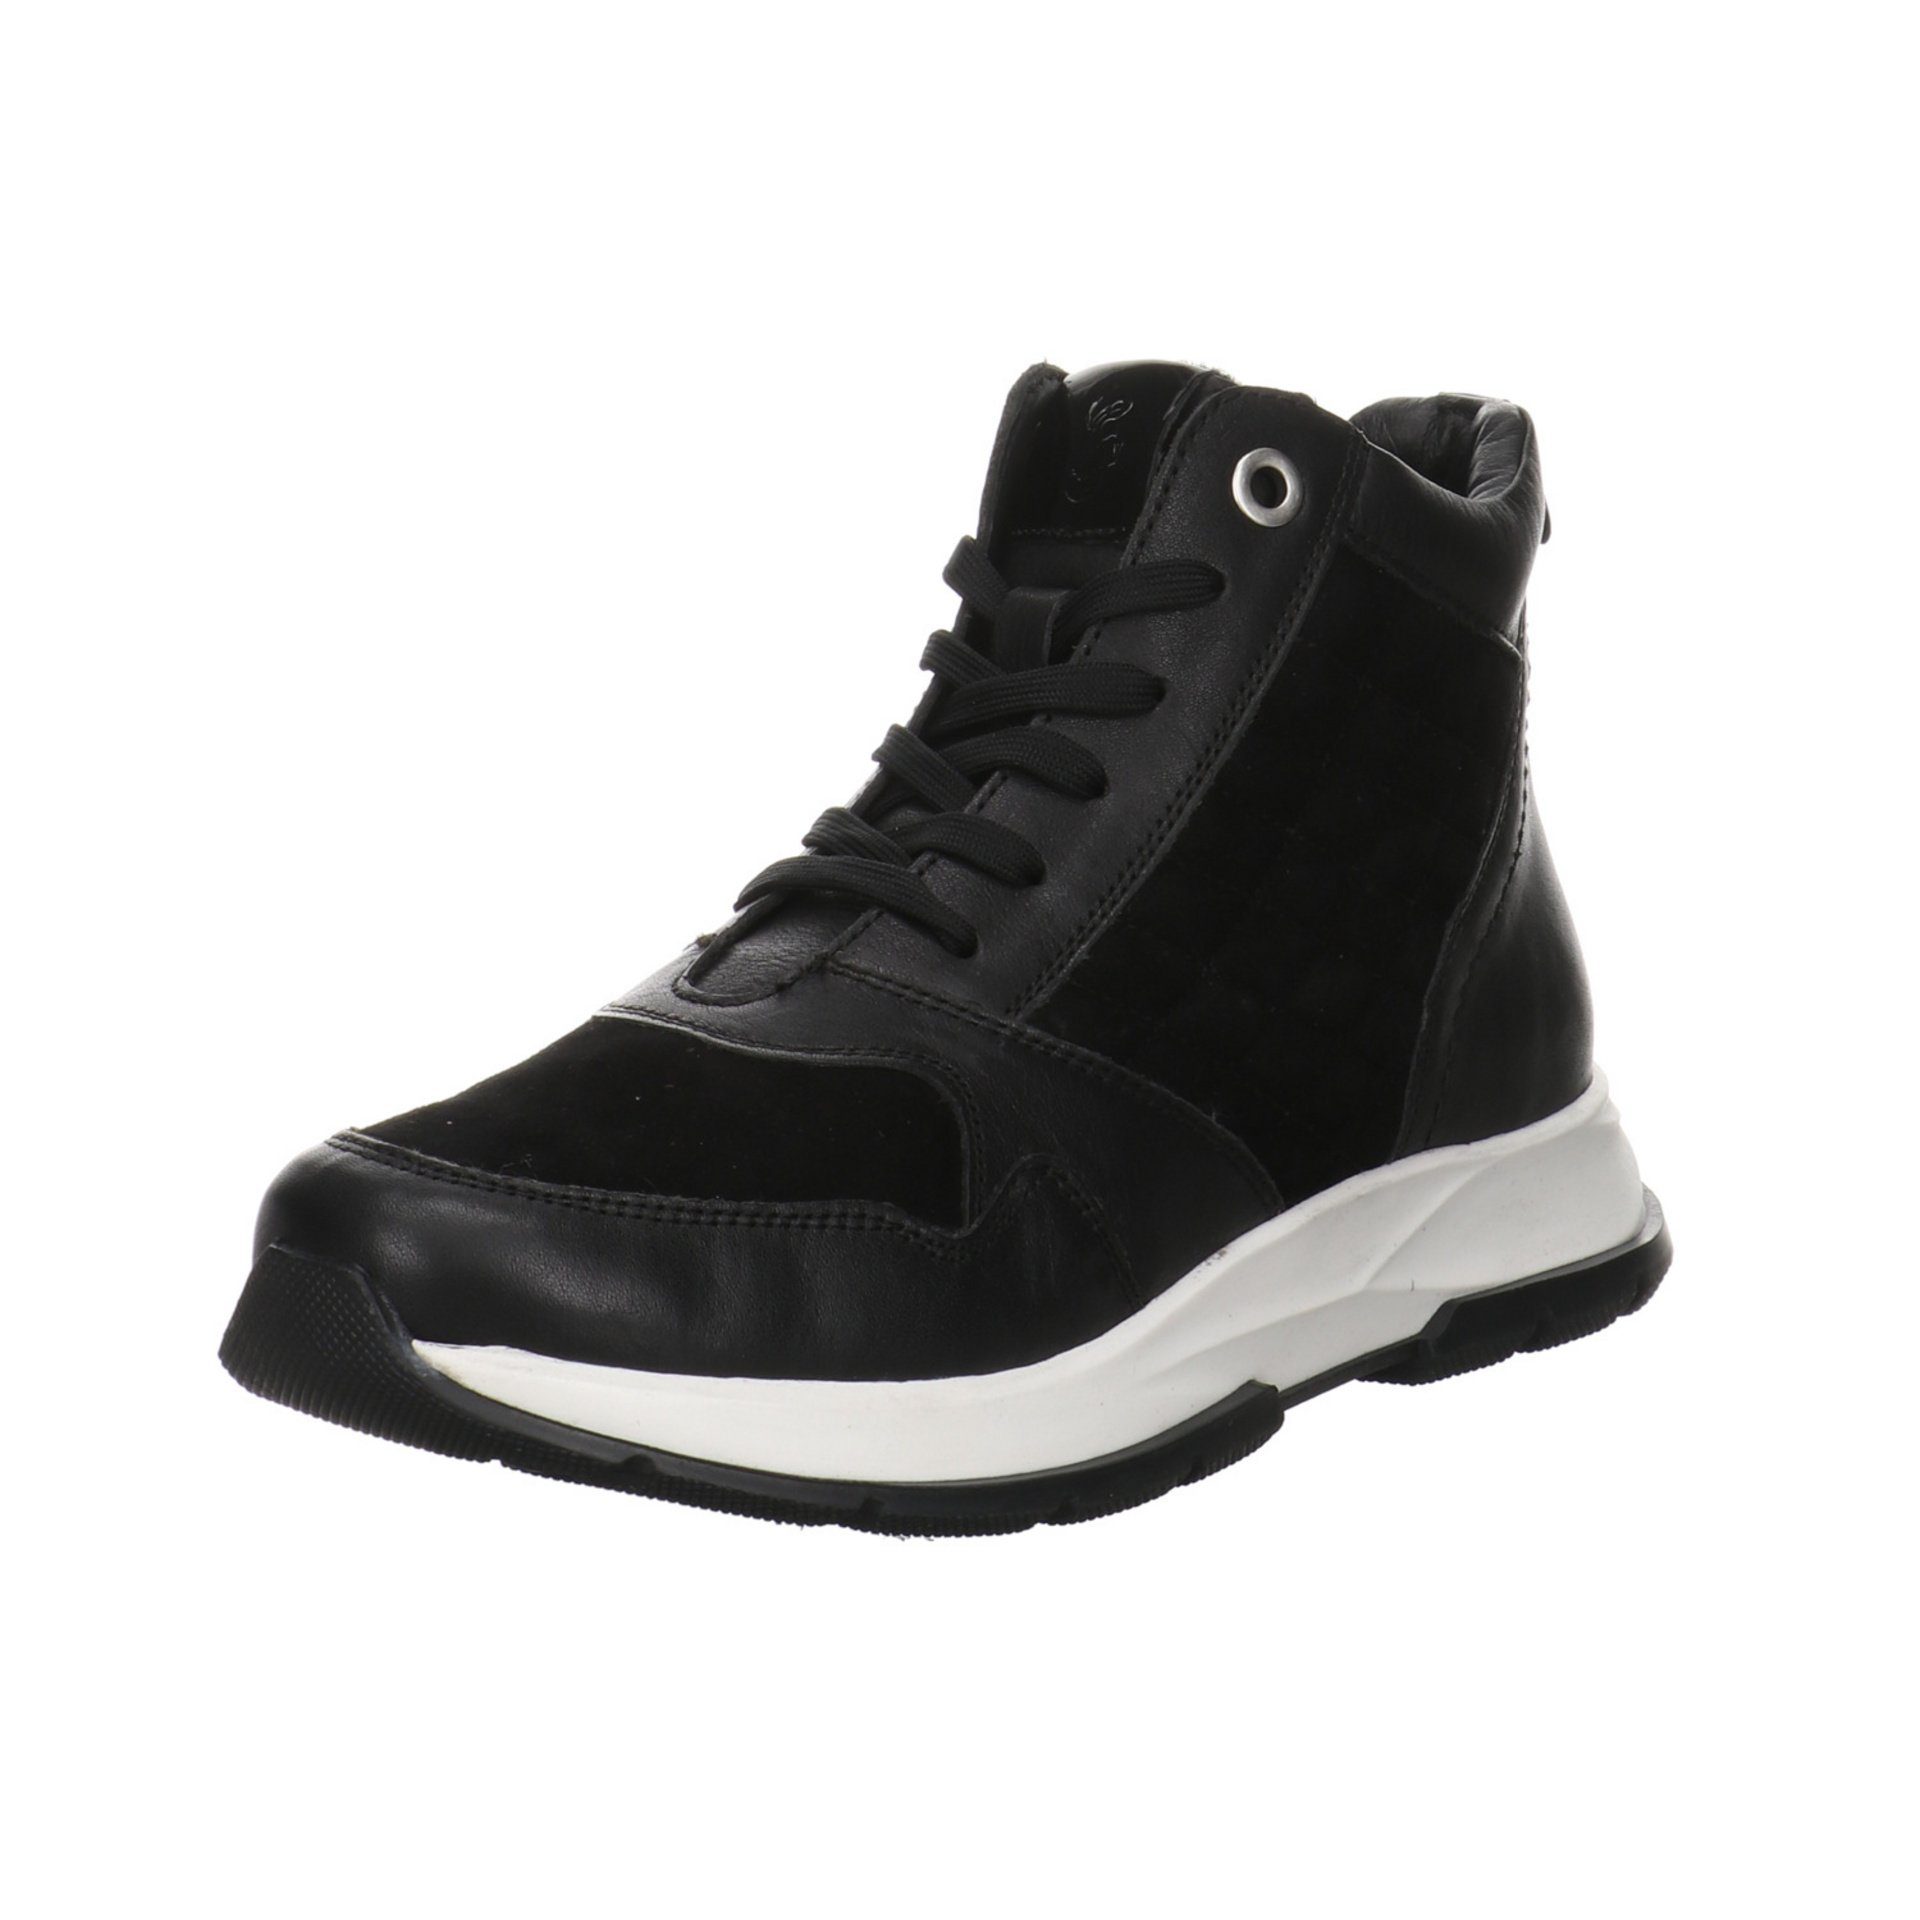 Salamander »Damen Stiefeletten Schuhe Nellia Hightop Sneaker«  Schnürstiefelette Lederkombination online kaufen | OTTO